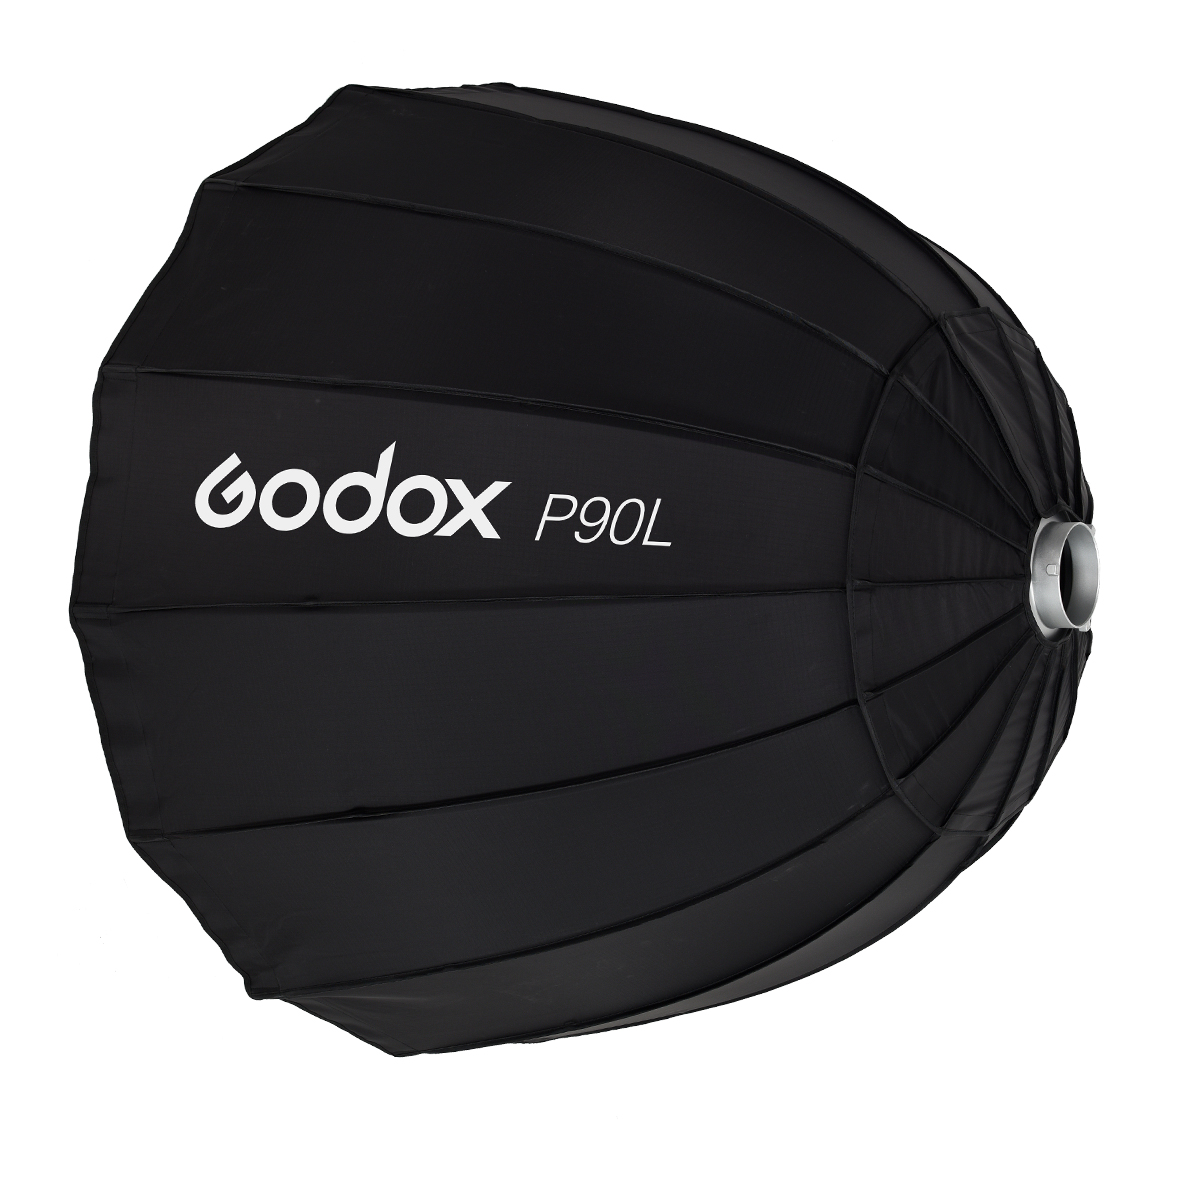   Godox P90L    Ultra-mart